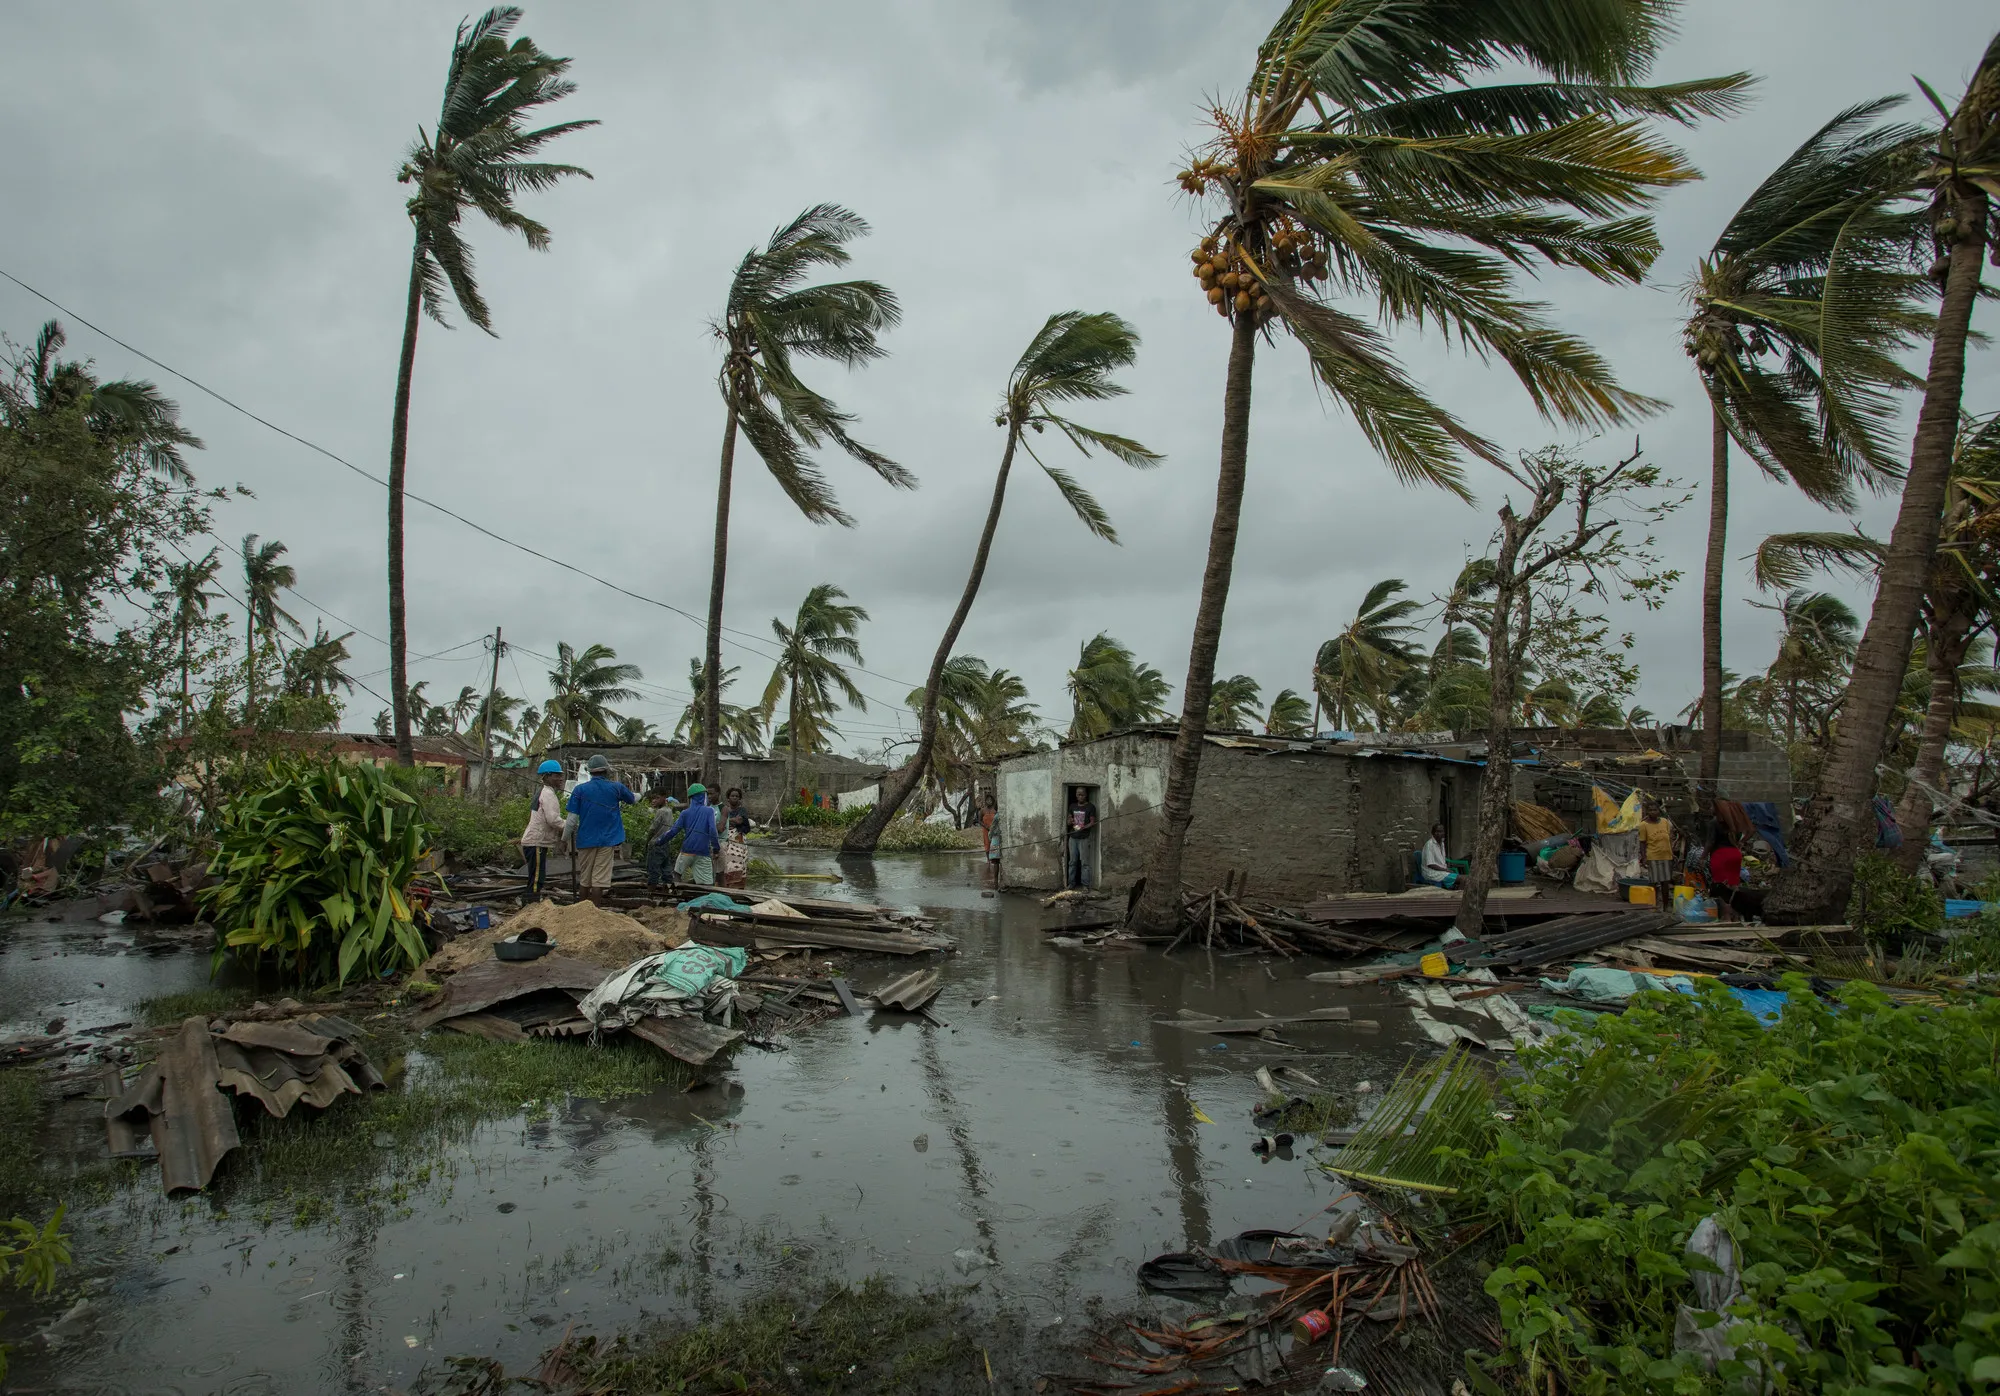 Beira, au Mozambique, après le cyclone Idai qui a ravagé la ville. Photo: Josh Estey / CARE